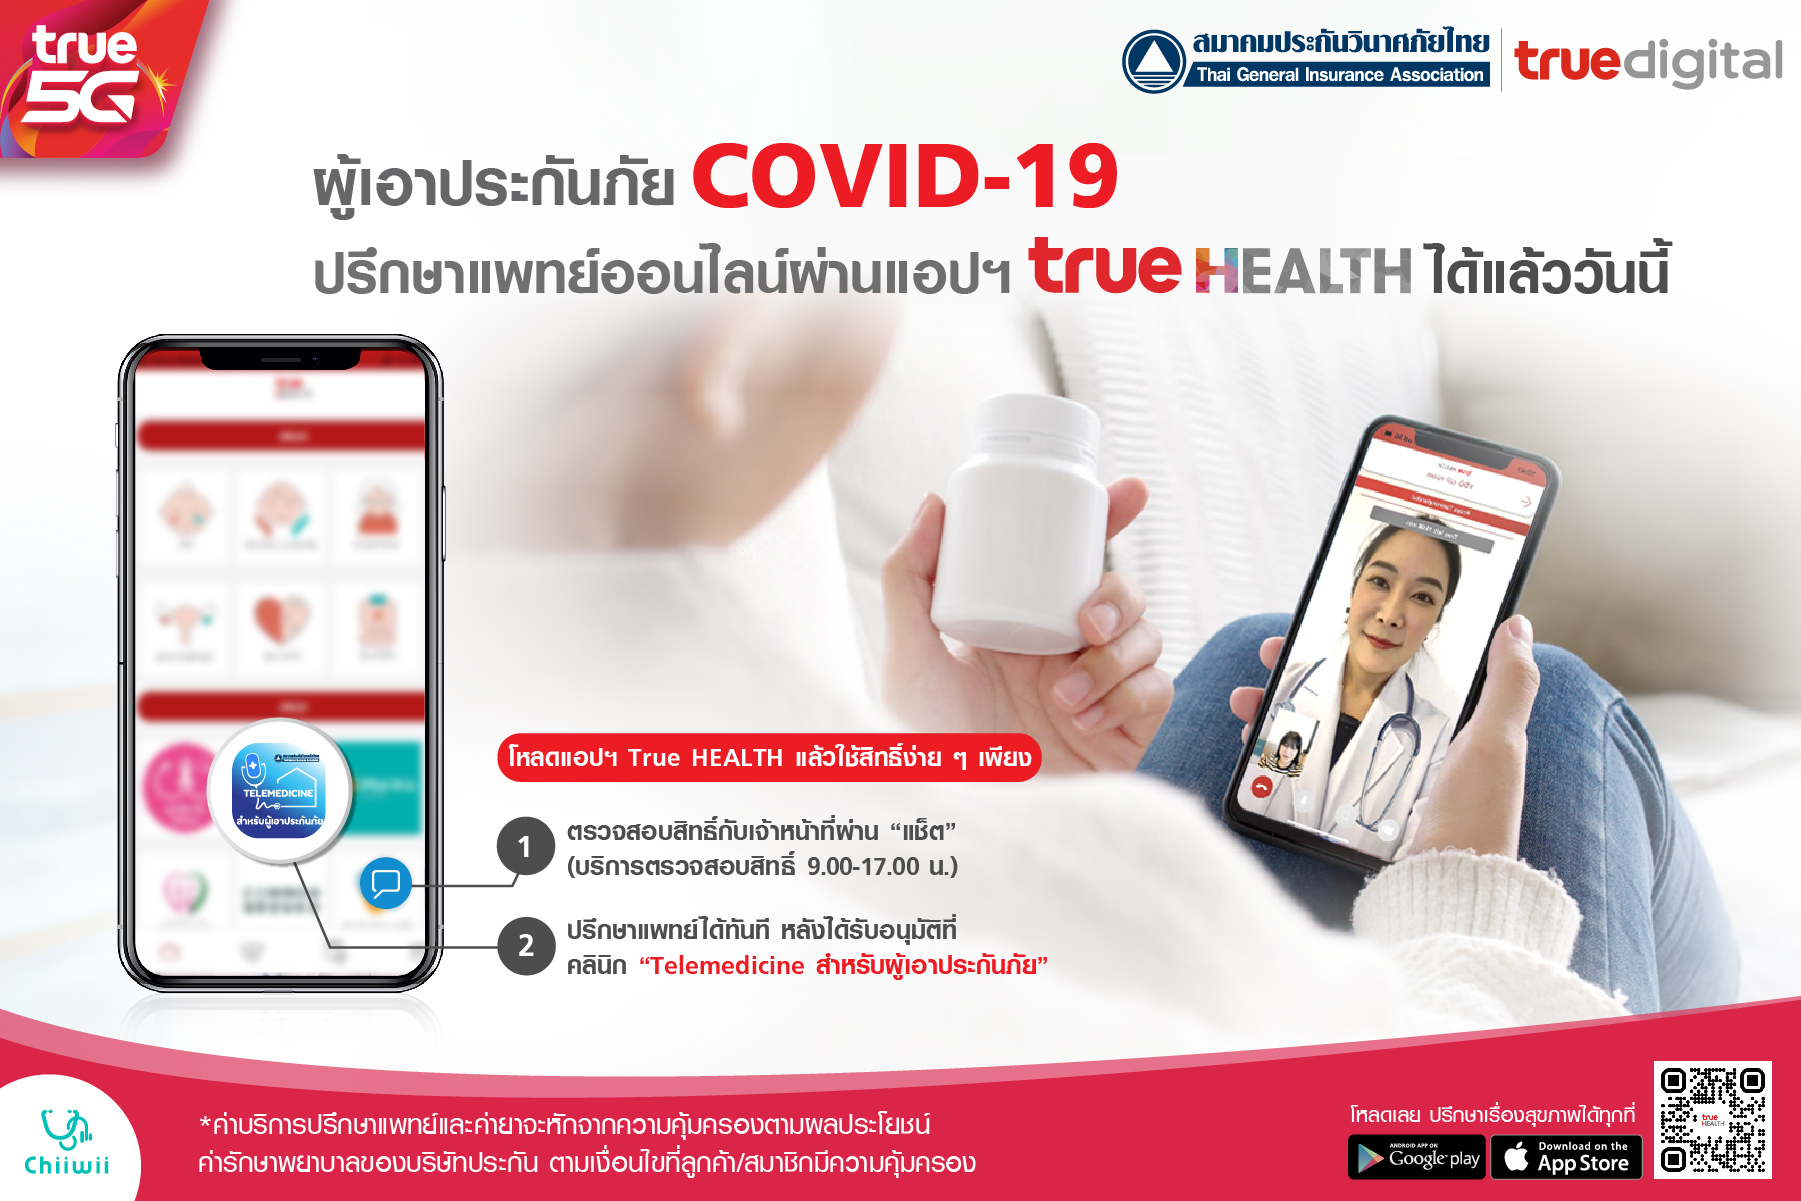 ผู้เอาประกันภัยที่ติดเชื้อ COVID-19 เข้าถึงบริการ Telemedicine ปรึกษาแพทย์ผ่าน True HEALTH ได้แล้ววันนี้